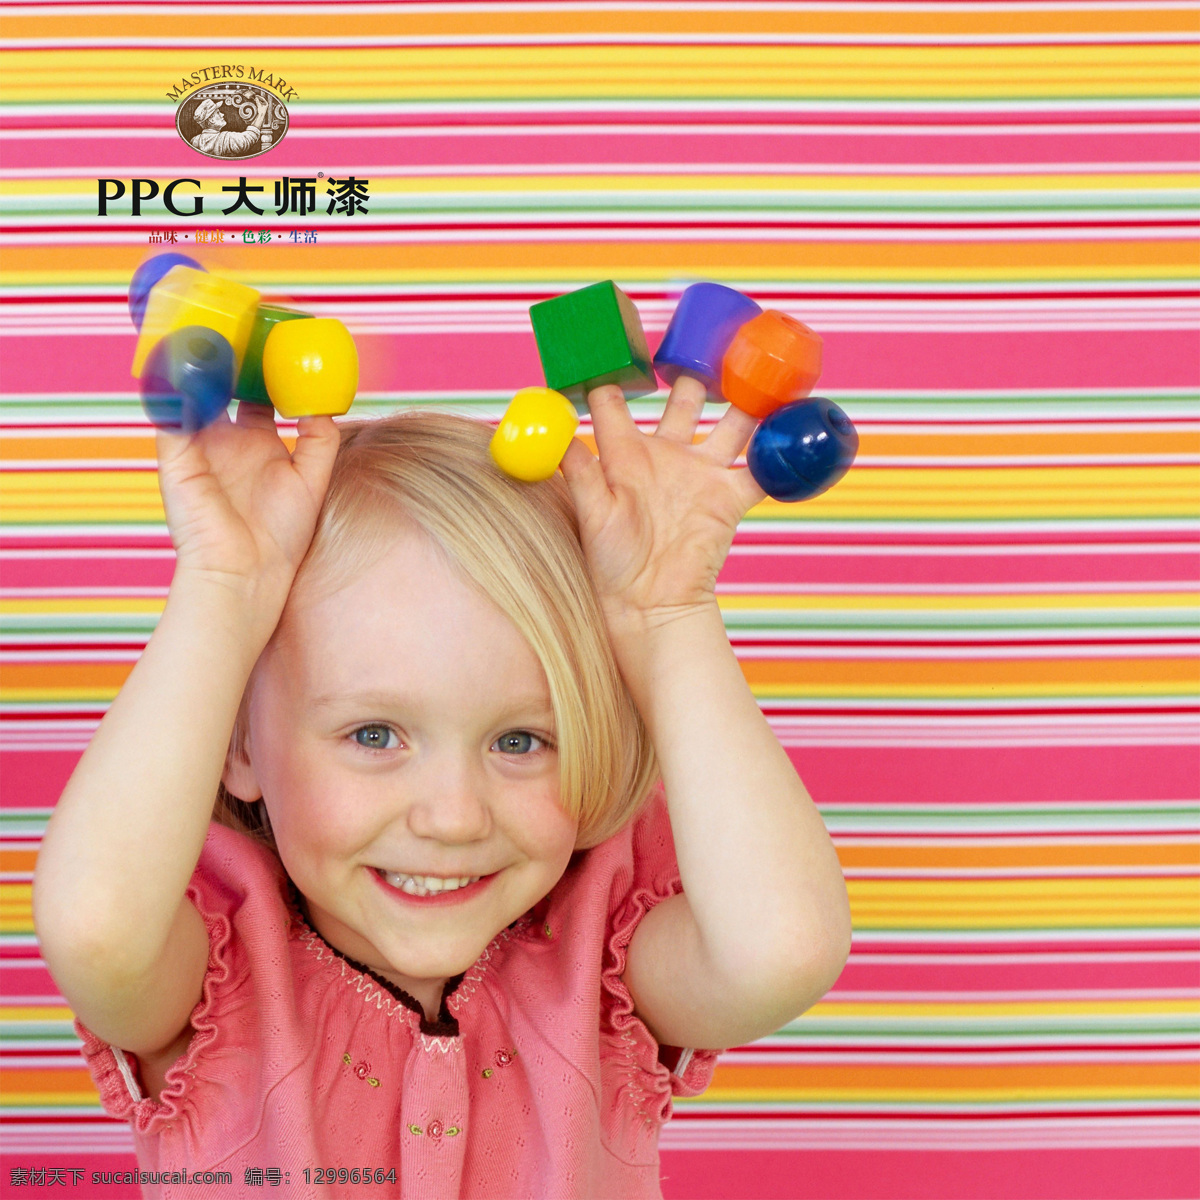 女孩 条纹 外国儿童 玩具 女孩设计素材 女孩模板下载 ppg大师漆 psd源文件